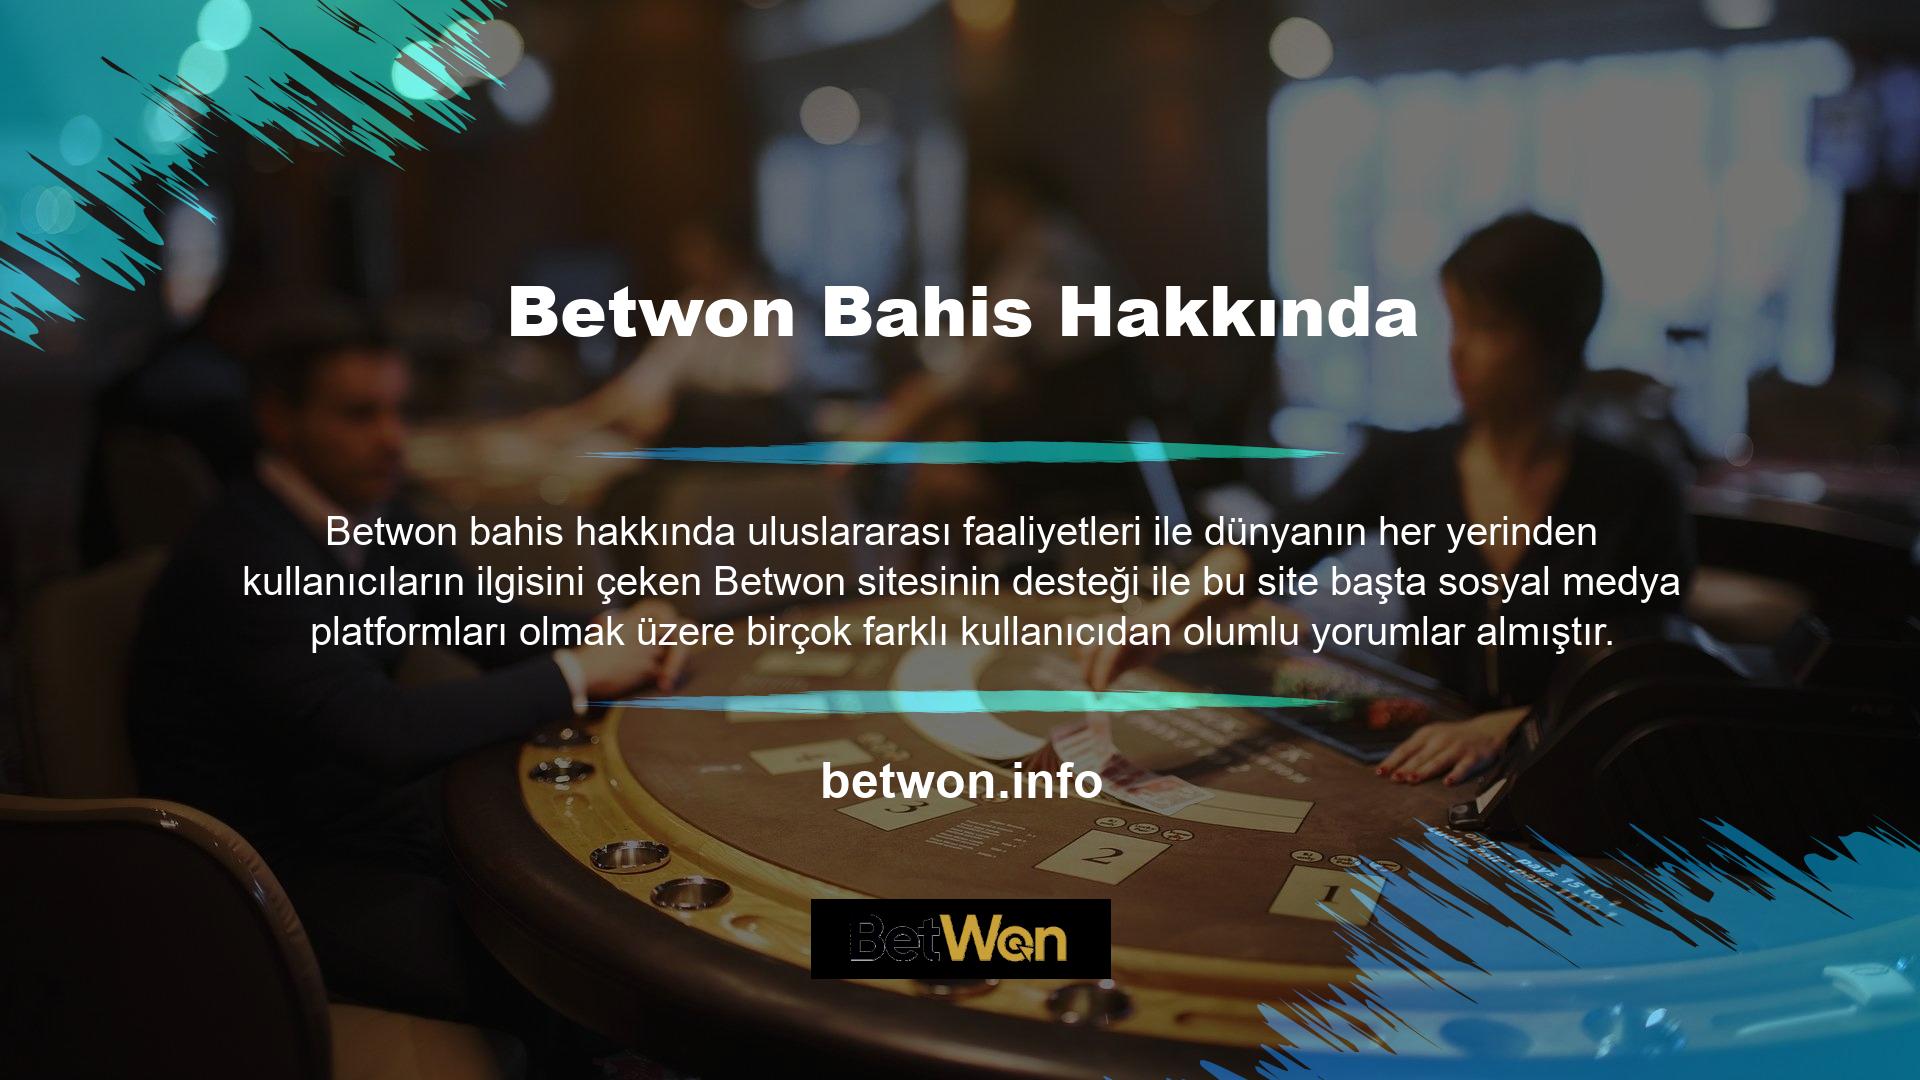 Betwon web sitesi, kullanıcılarına dört farklı dilde tam destek sunmaktadır